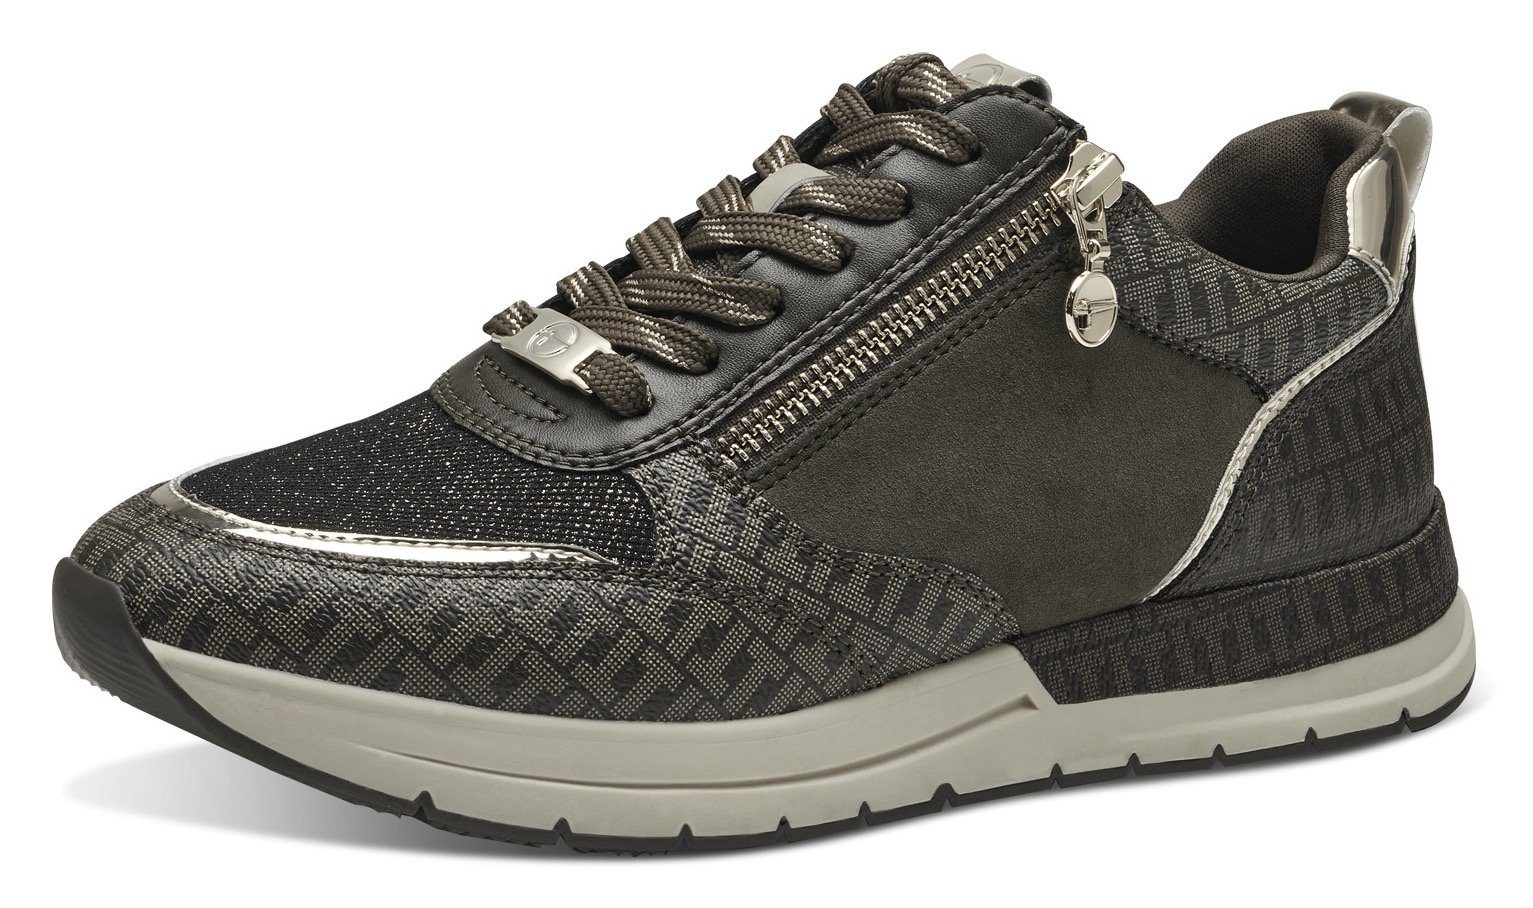 Tamaris Sneaker mit trendigen Metallic-Details olivgrün kombiniert | Sneaker low